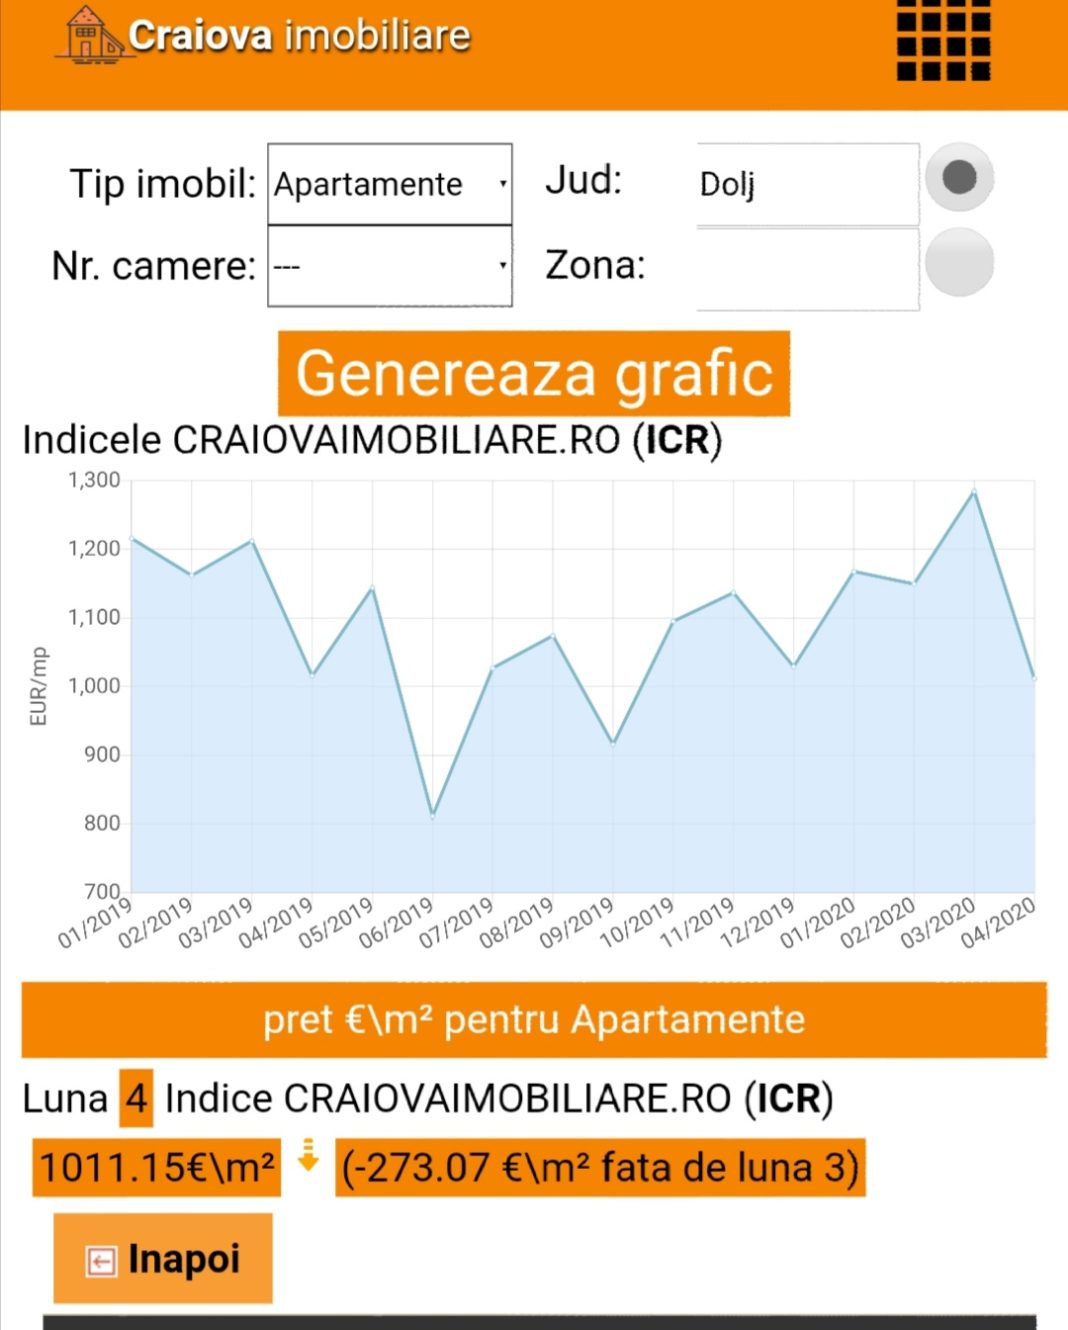 Indicele imobiliar realizat de www.craiovaimobiliare.ro arată o scădere vertiginoasă a prețurilor medii în Craiova, în interval de o lună